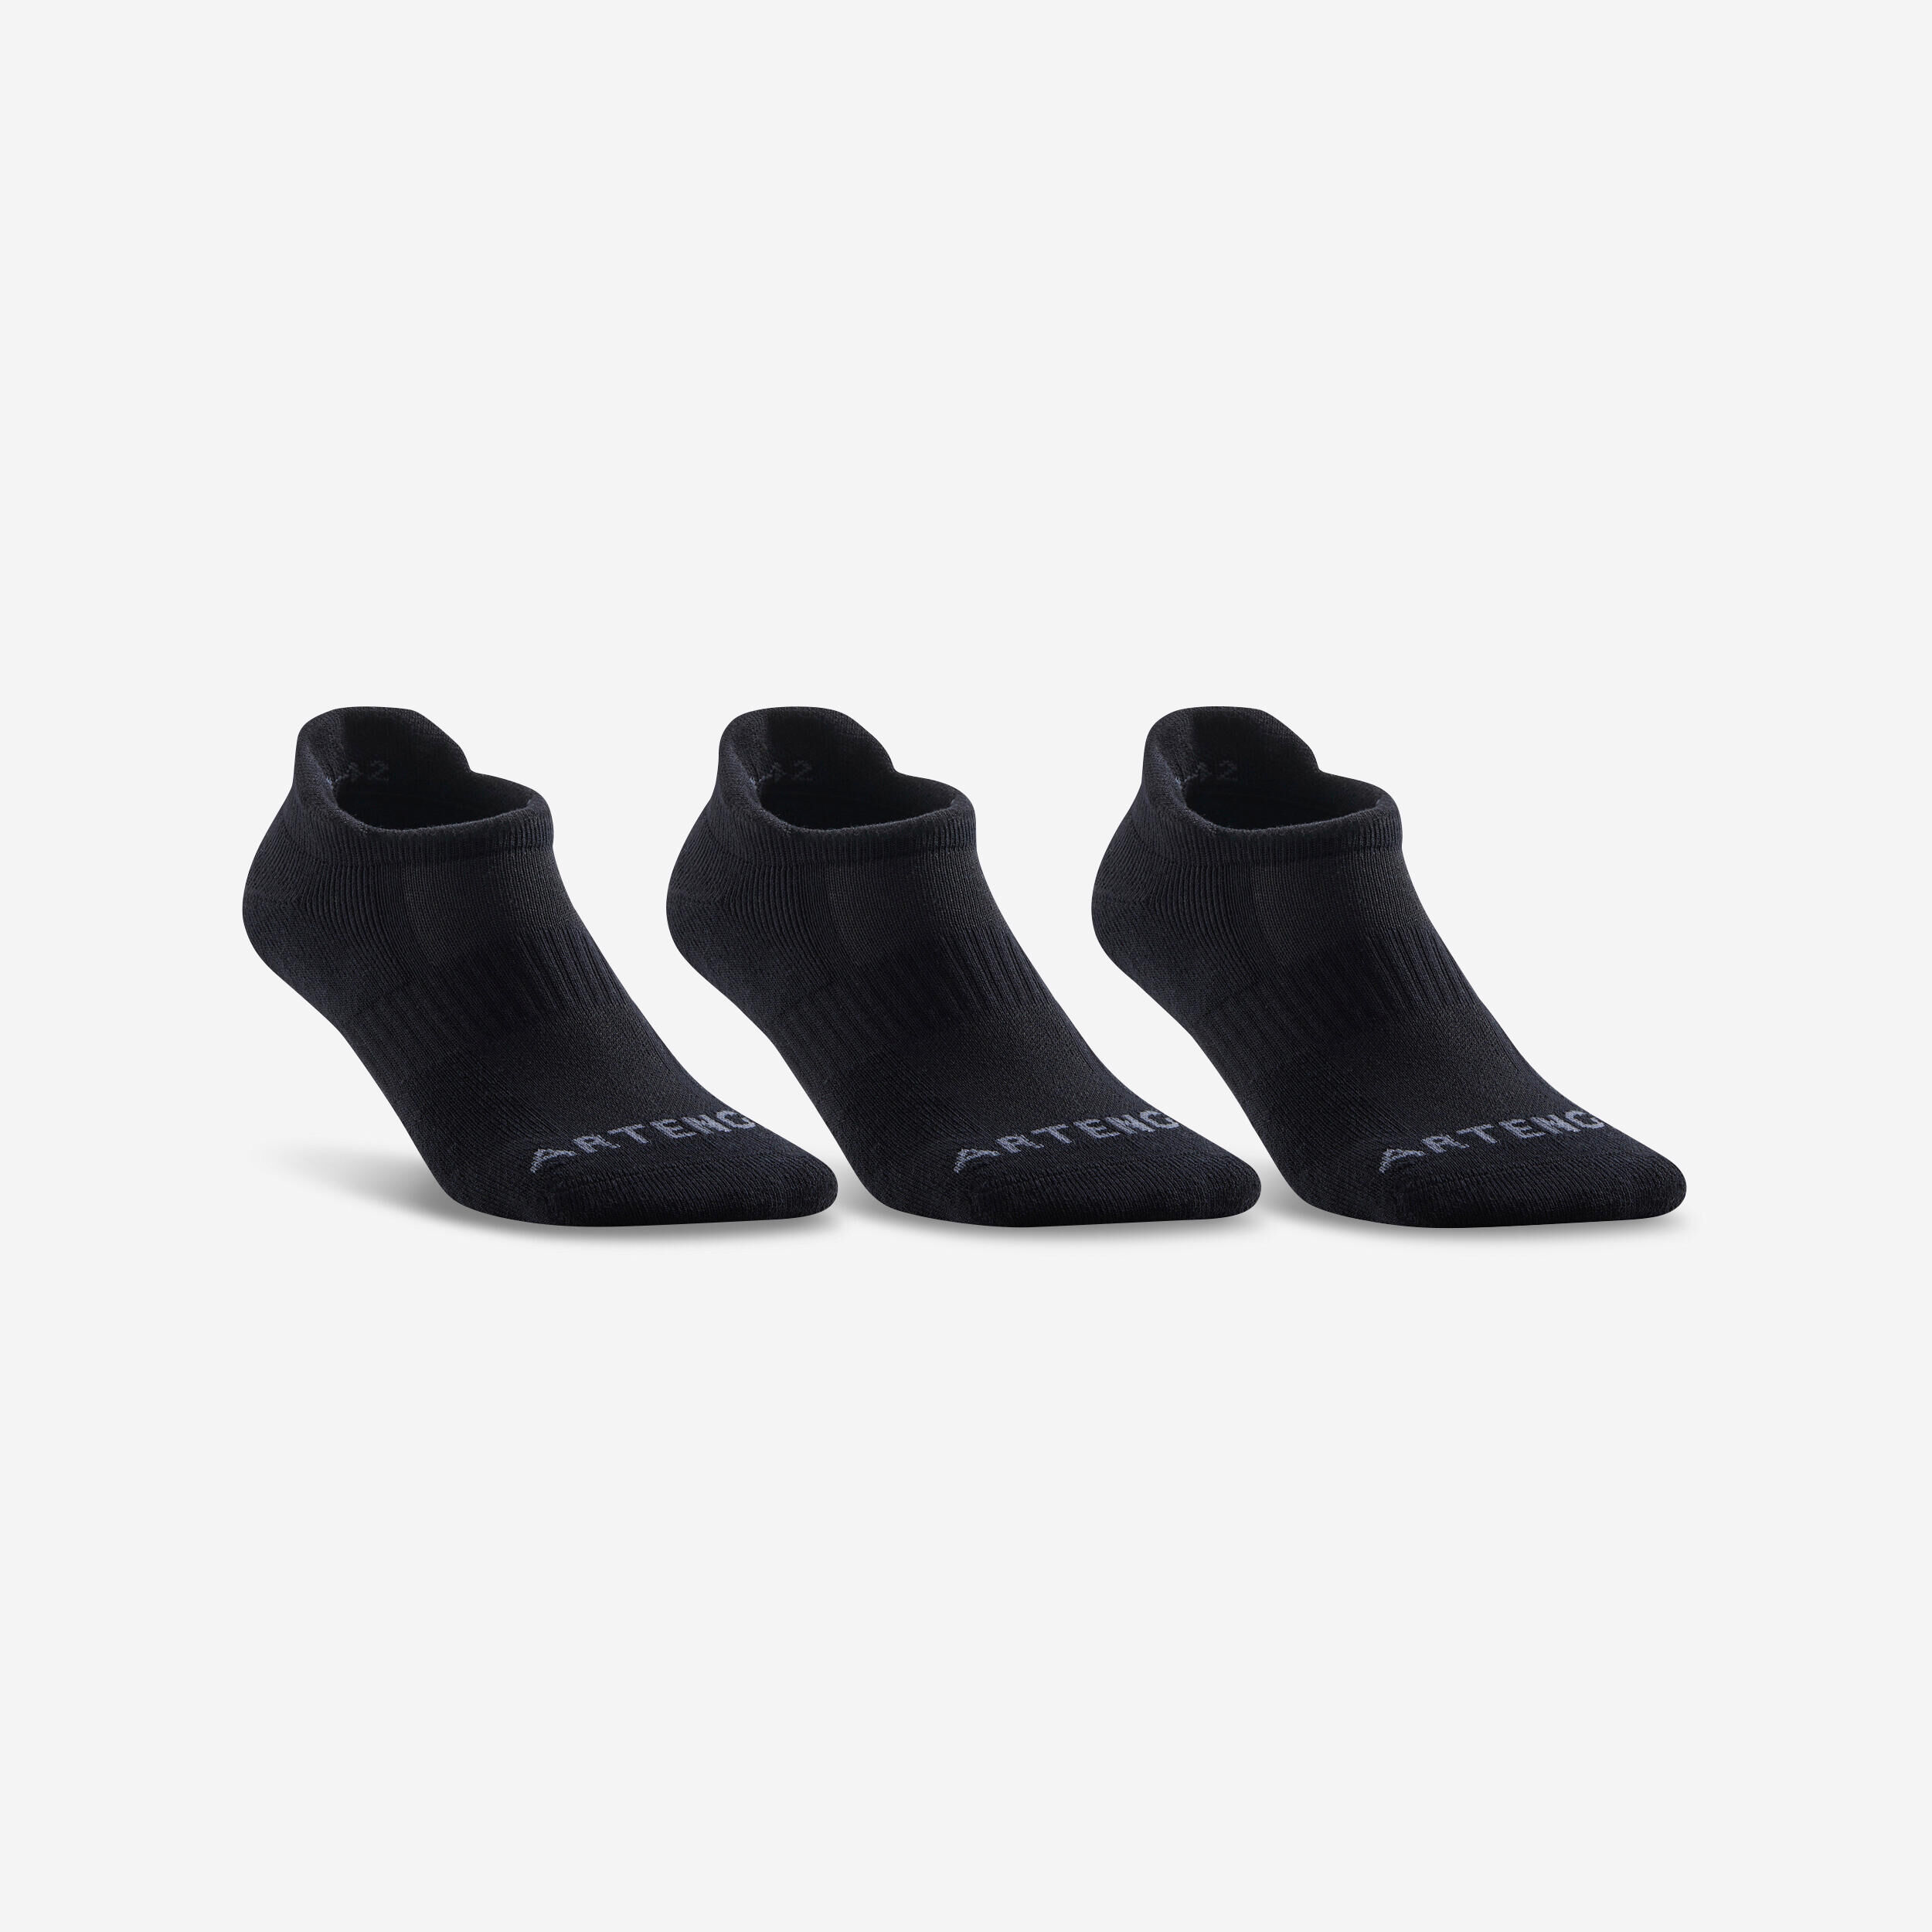 ARTENGO RS 500 Low Sports Socks Tri-Pack - Black